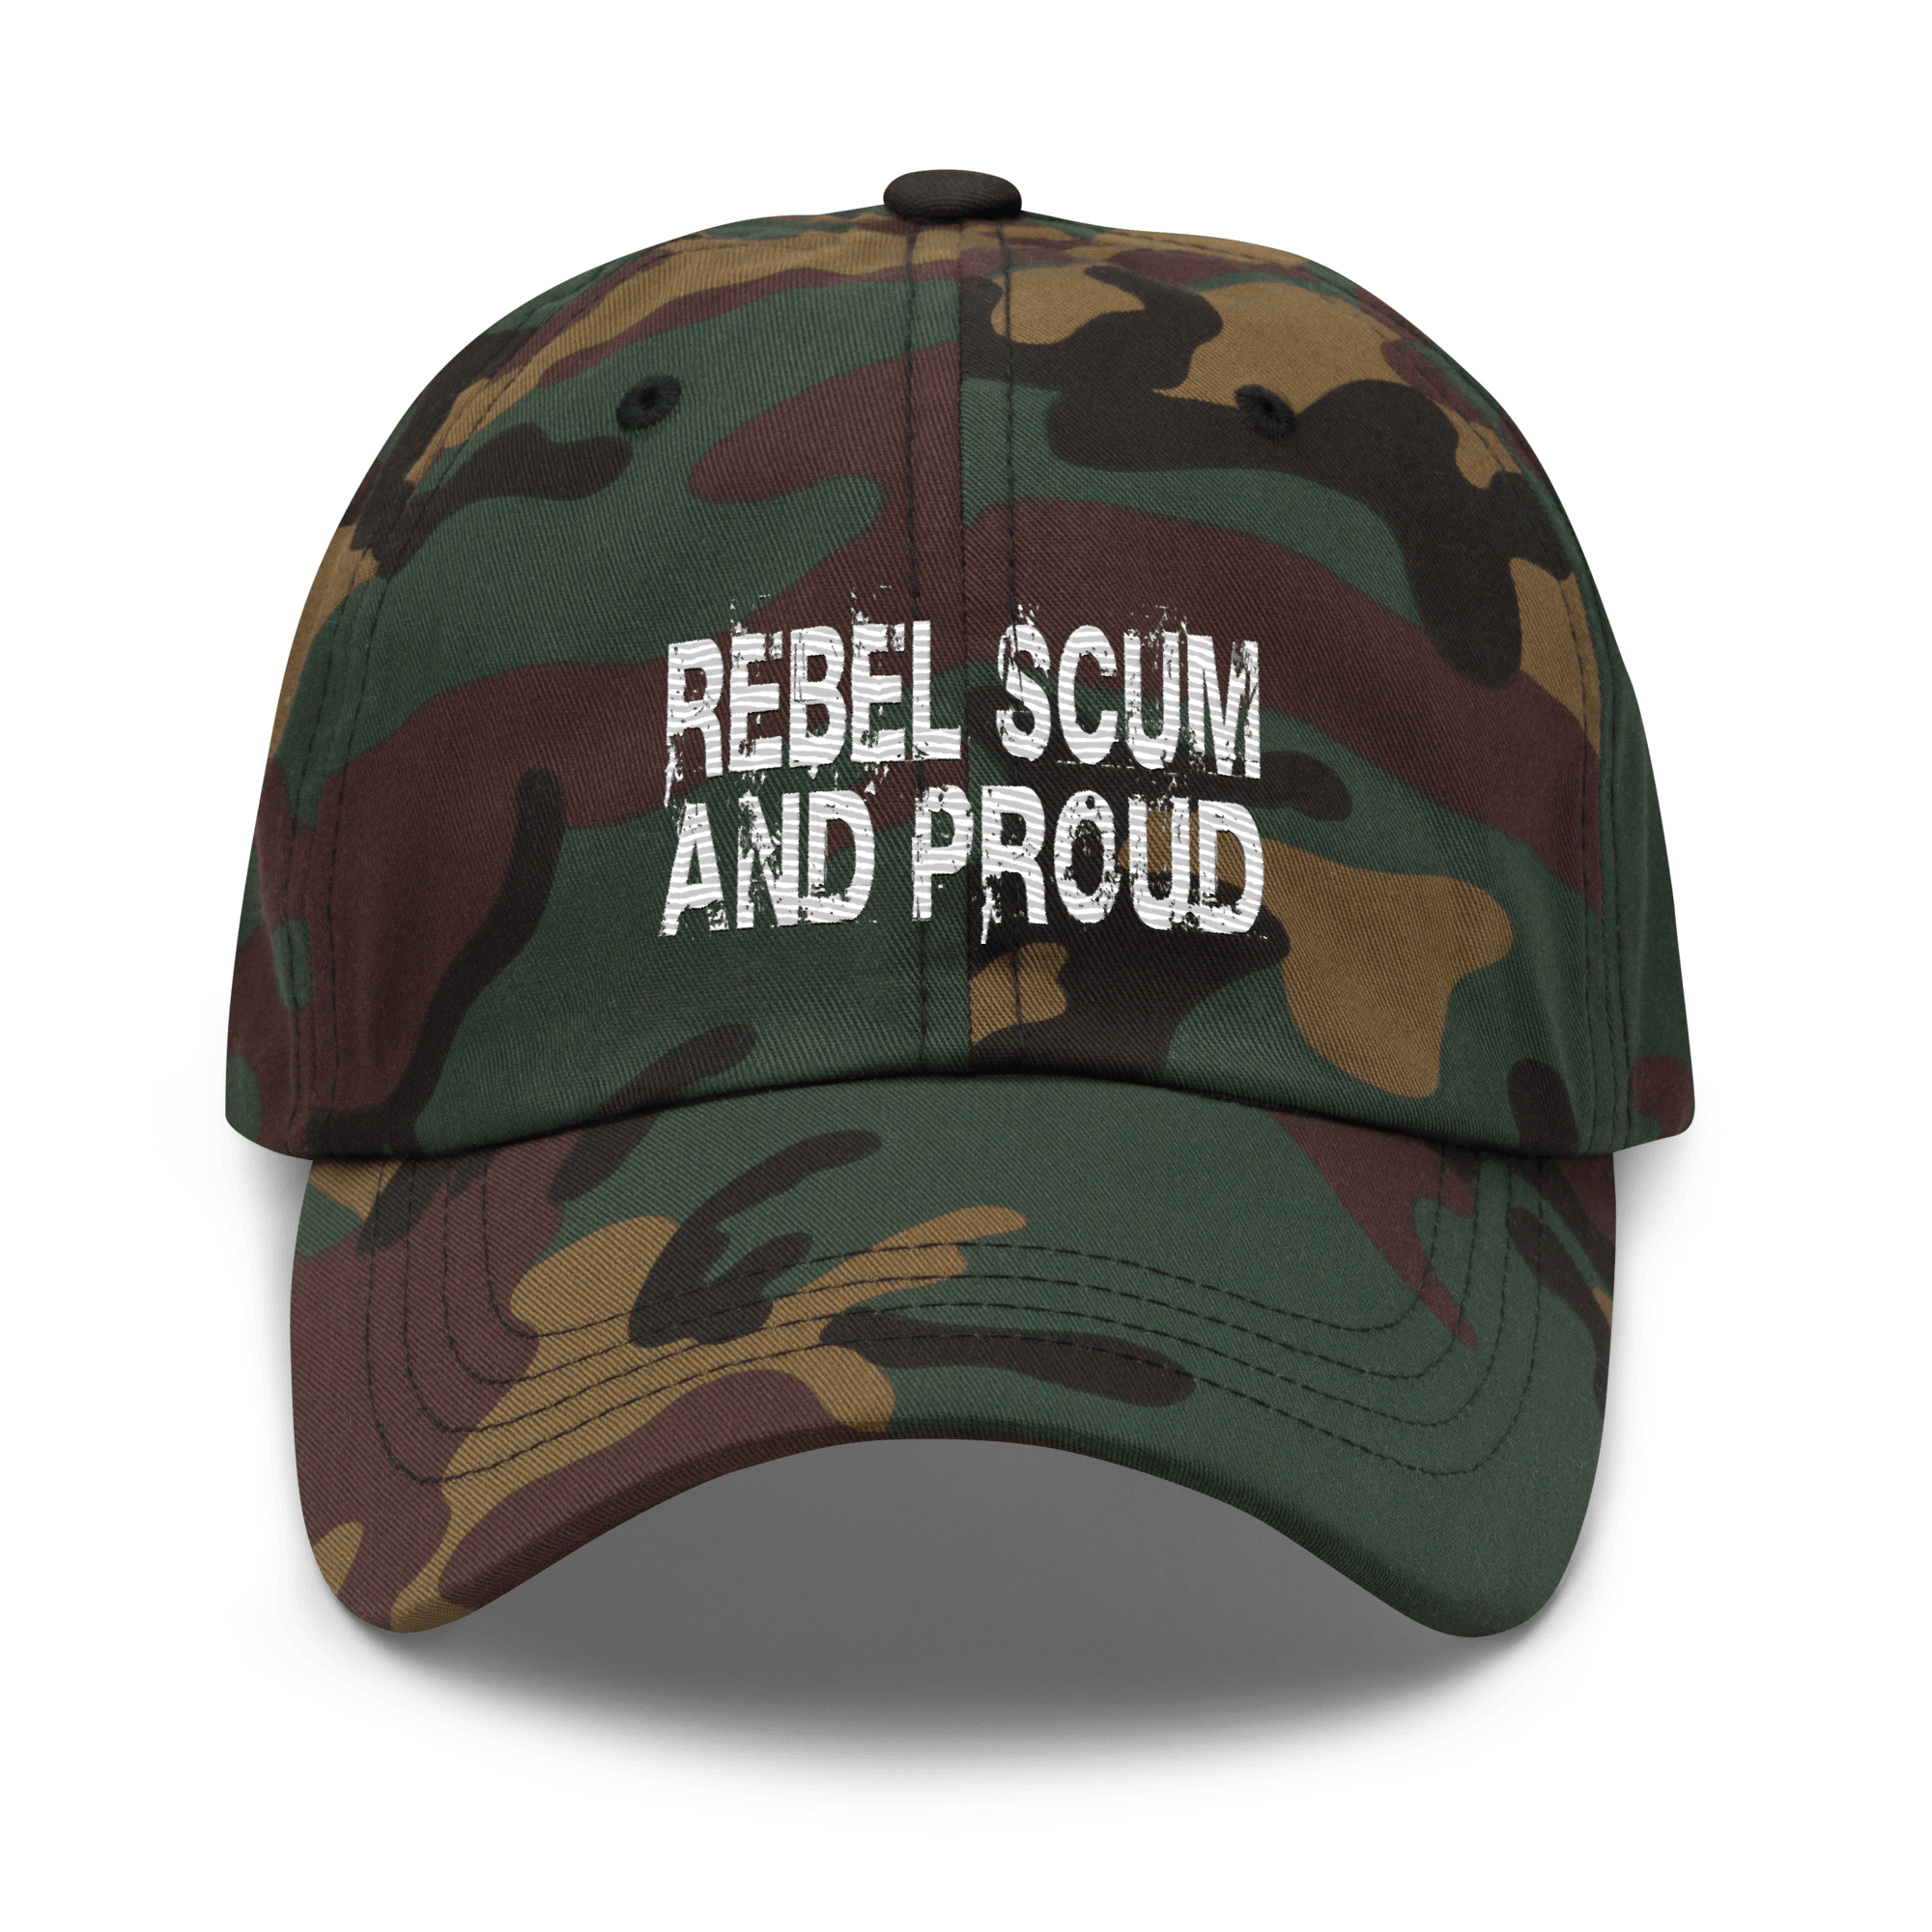 Rebel Scum and Proud Dad hat